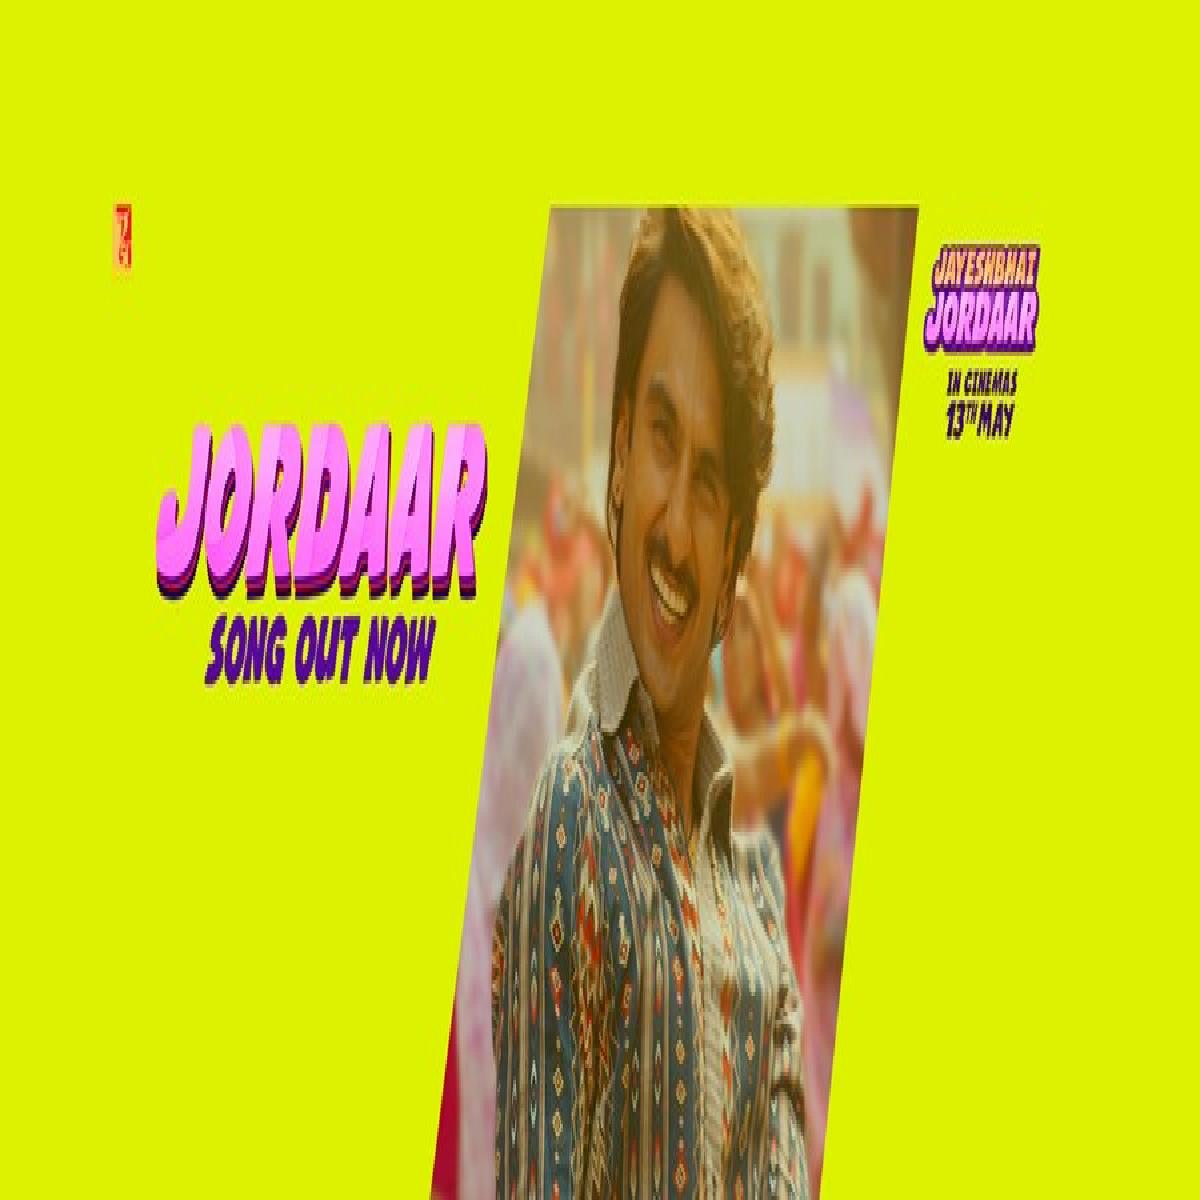 Meet The Jordaar In Jayeshbhai Jordaar, Title Track Out